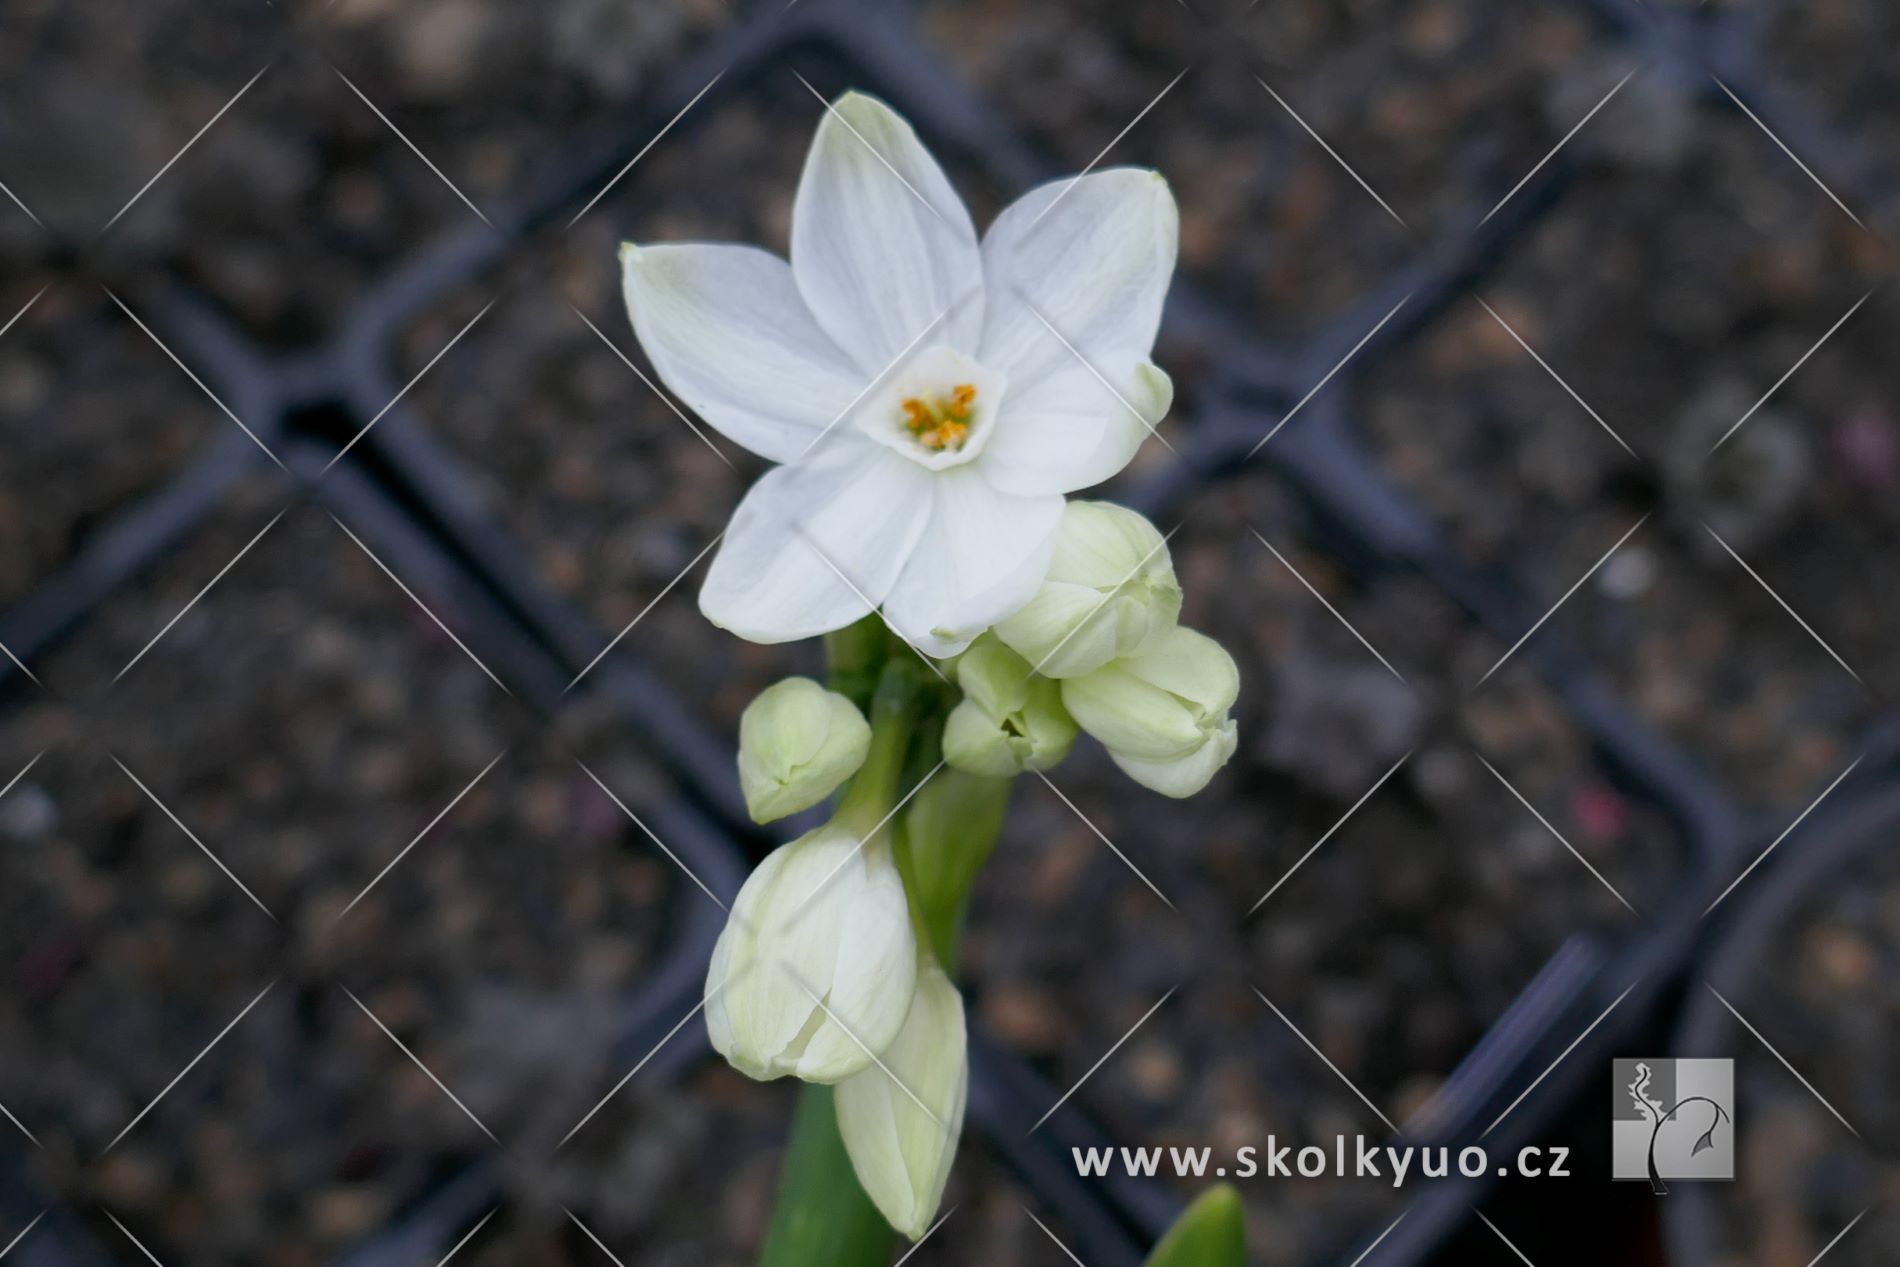 Narcissus tazetta ´Ziva´